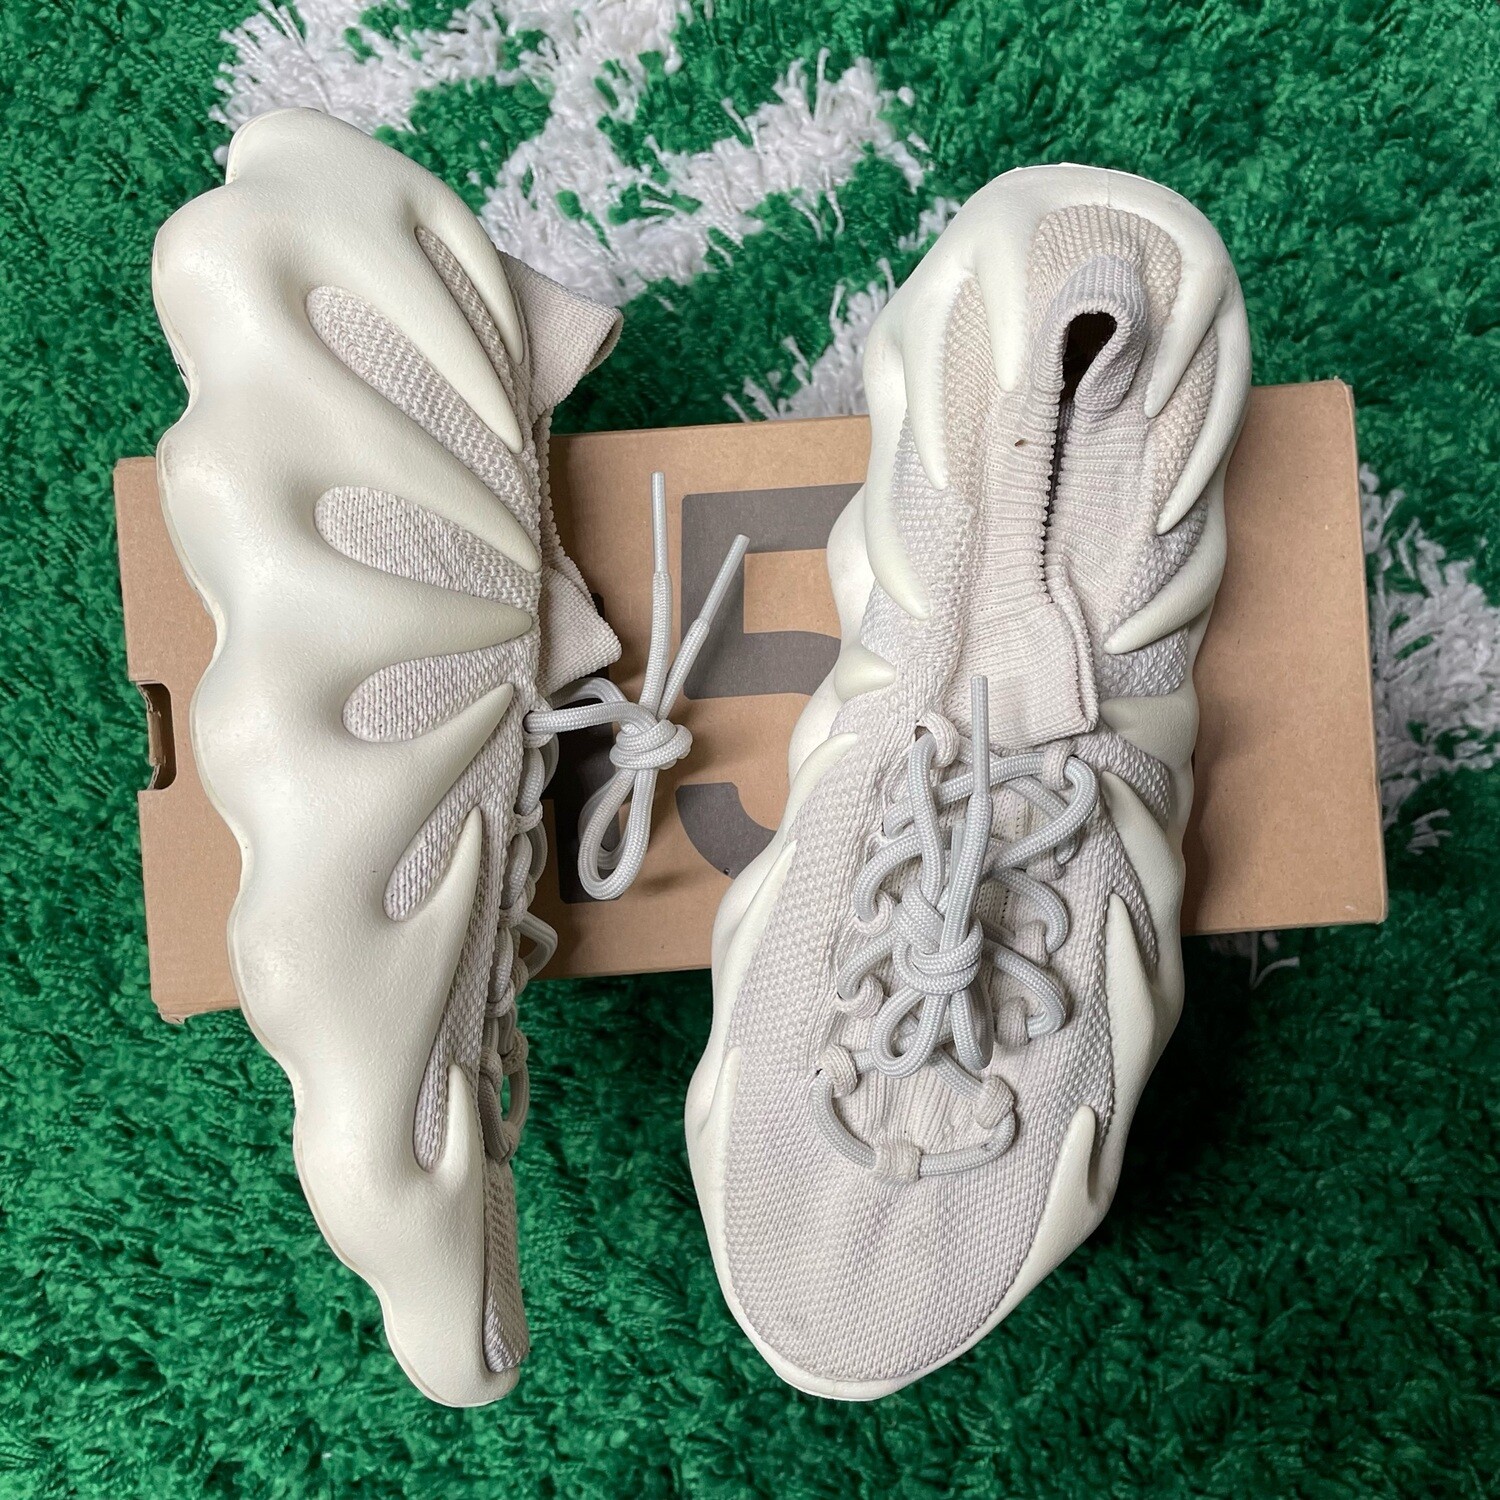 adidas Yeezy 450 Cloud White Size 11M/12.5W